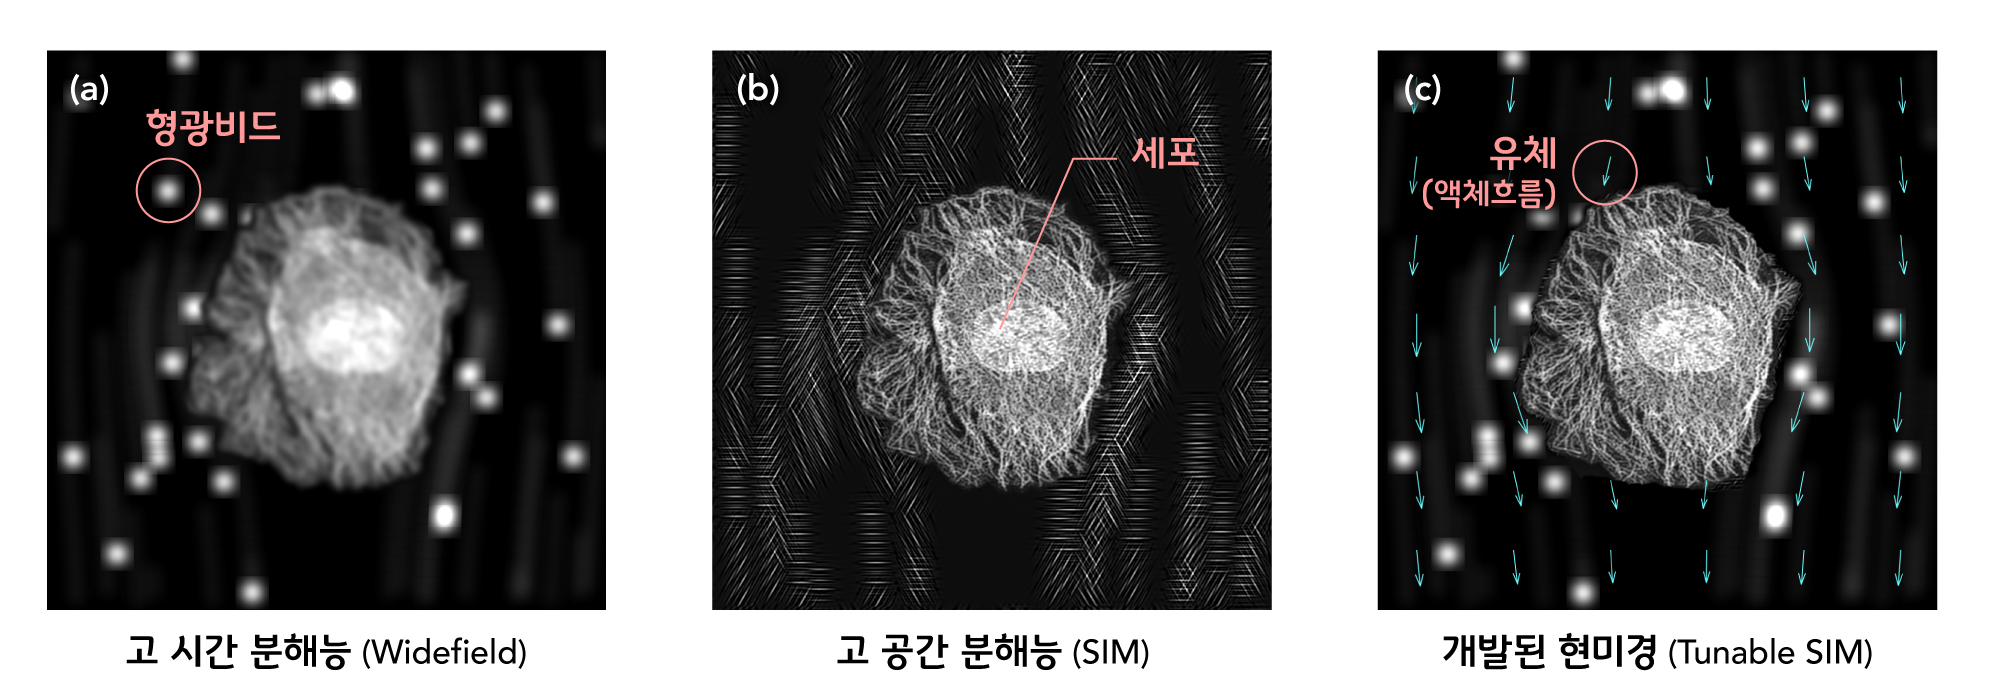 [연구그림] 한 장의 이미지 내에서 시·공간 분해능의 선택적인 강화가 가능한 Tunable SIM(개발된 현미경)의 시뮬레이션 결과